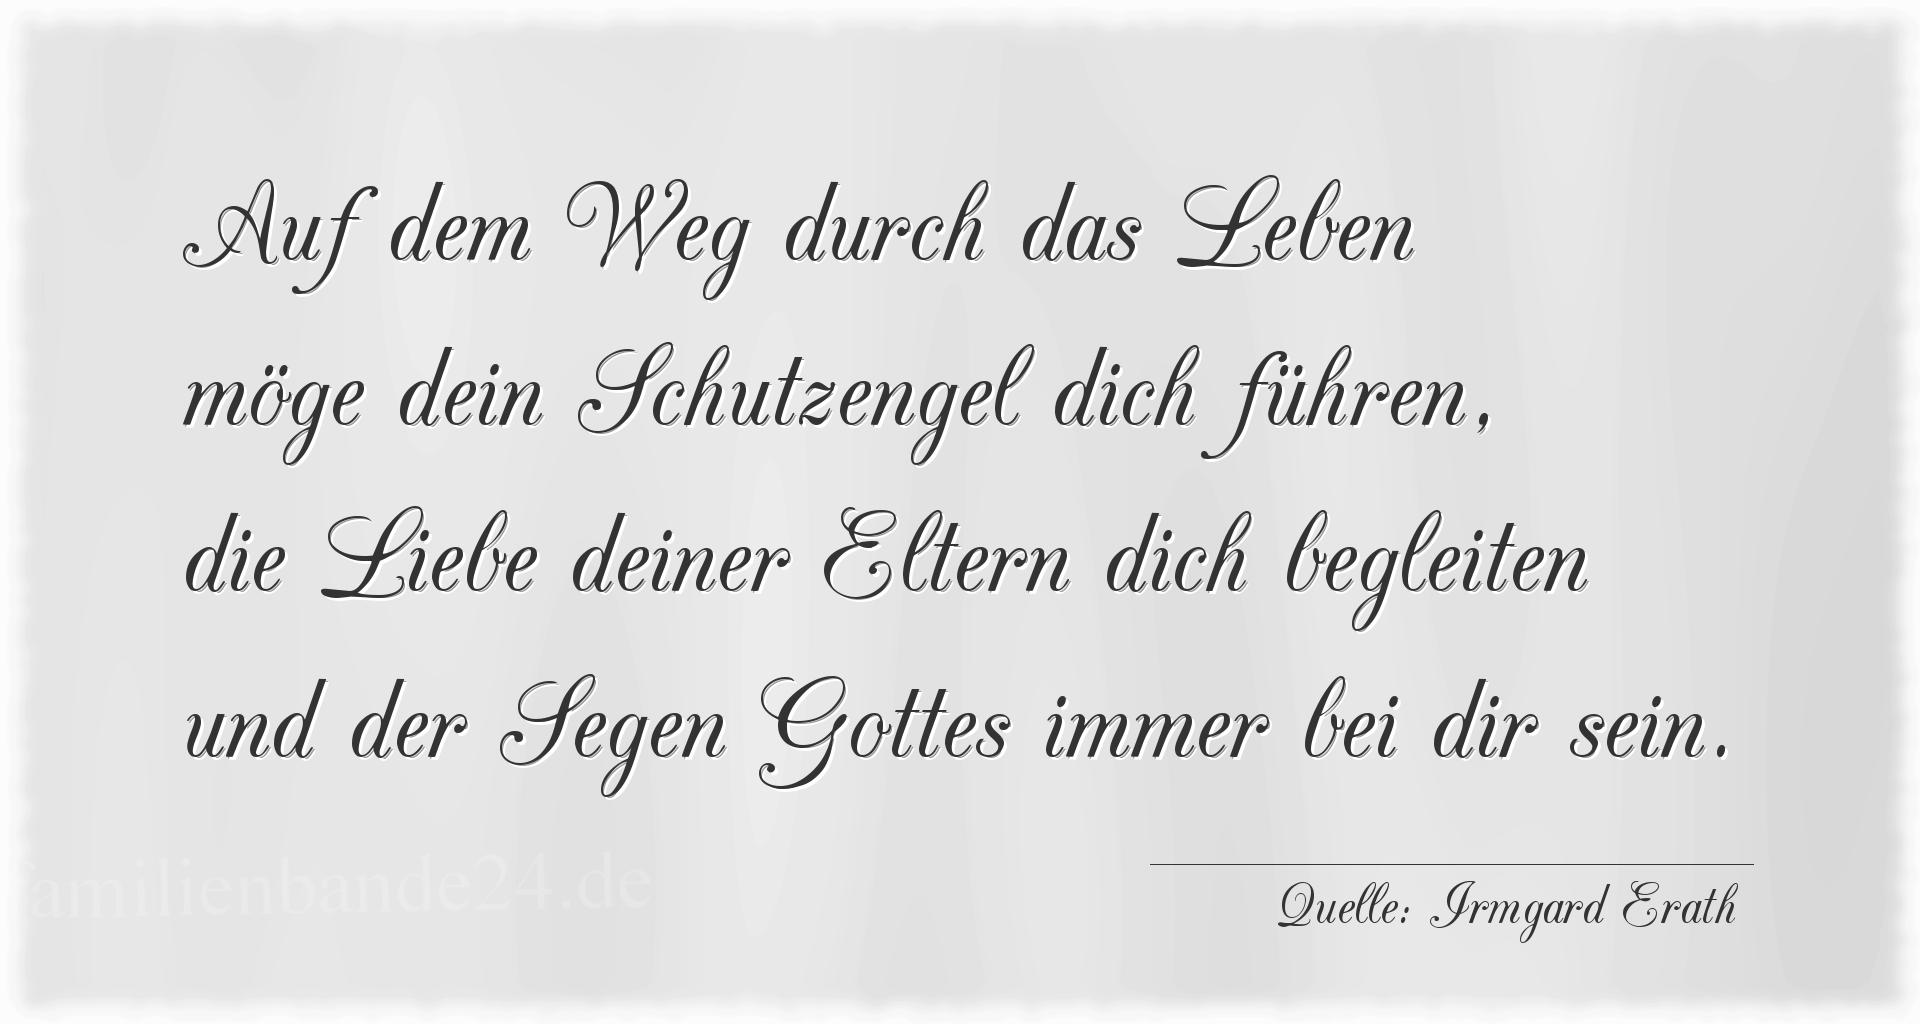 Taufspruch Nr. 1893 (von Irmgard Erath): Auf dem Weg durch das Leben
möge dein Schutzengel dich f [...]